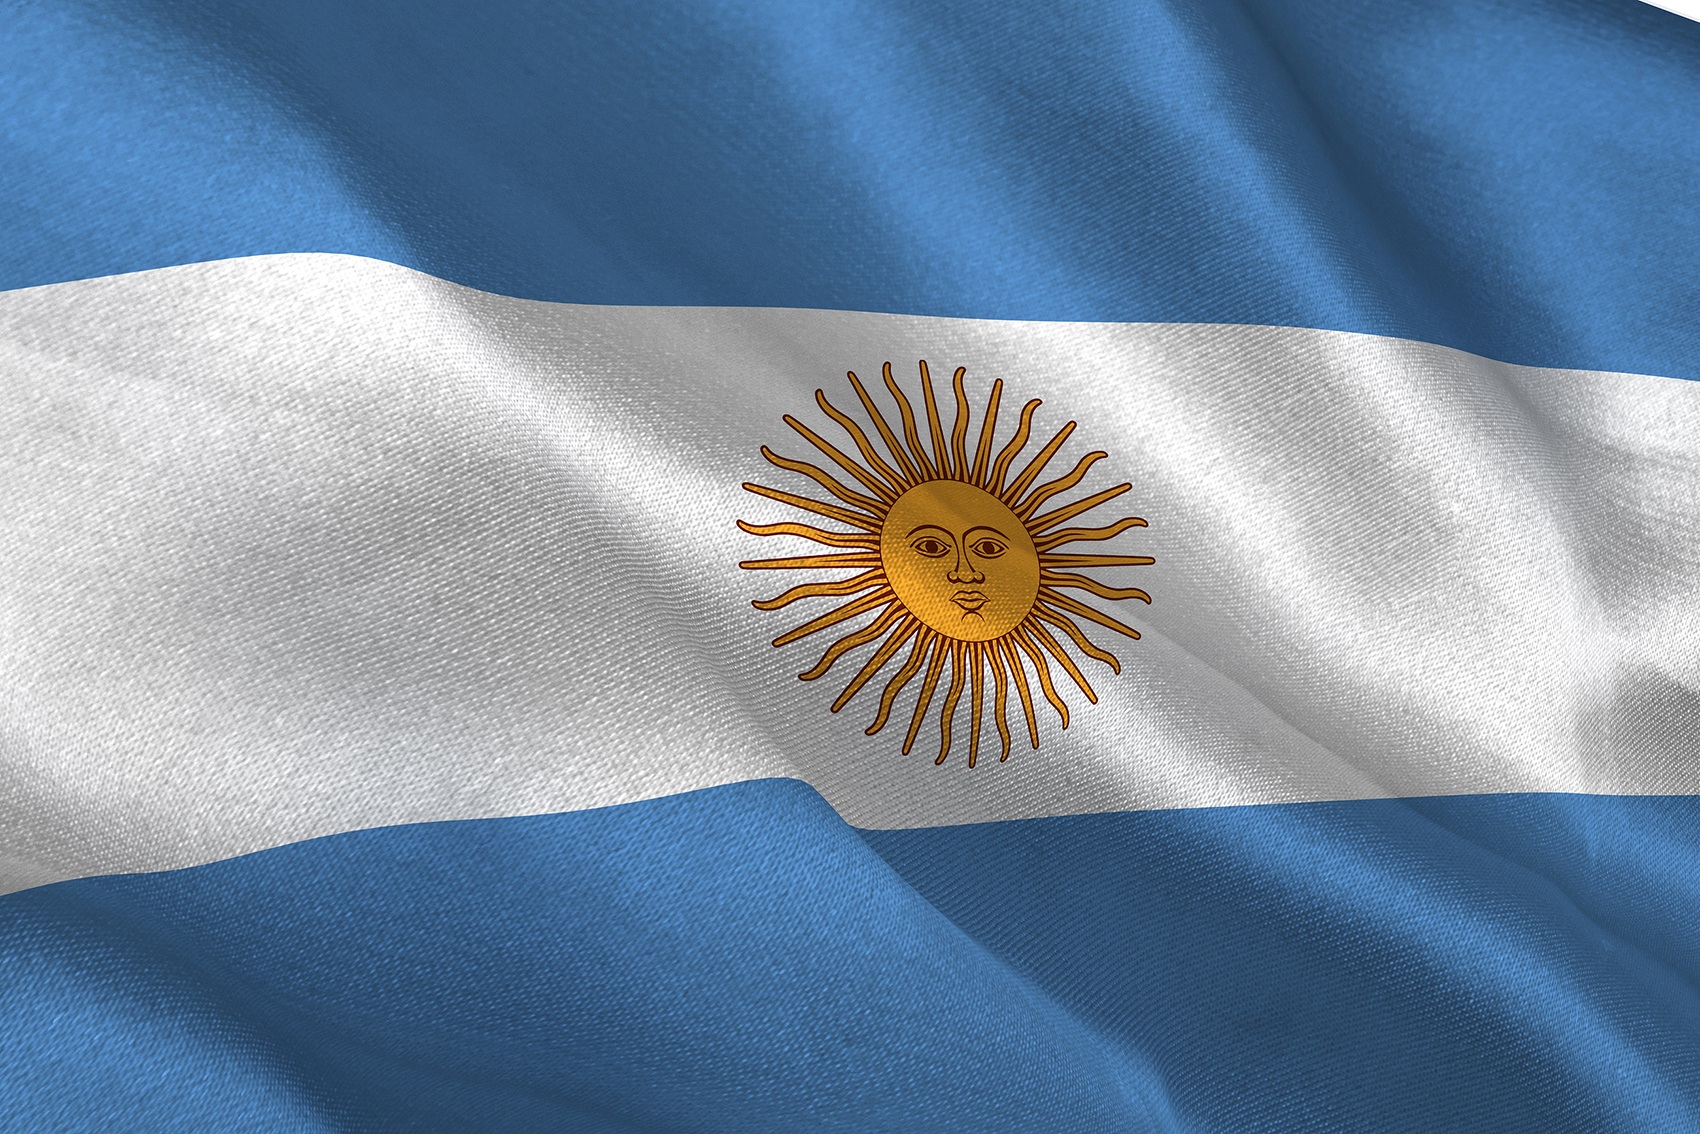 阿根廷:终止协定,重启马岛主权谈判!英国:强烈不满